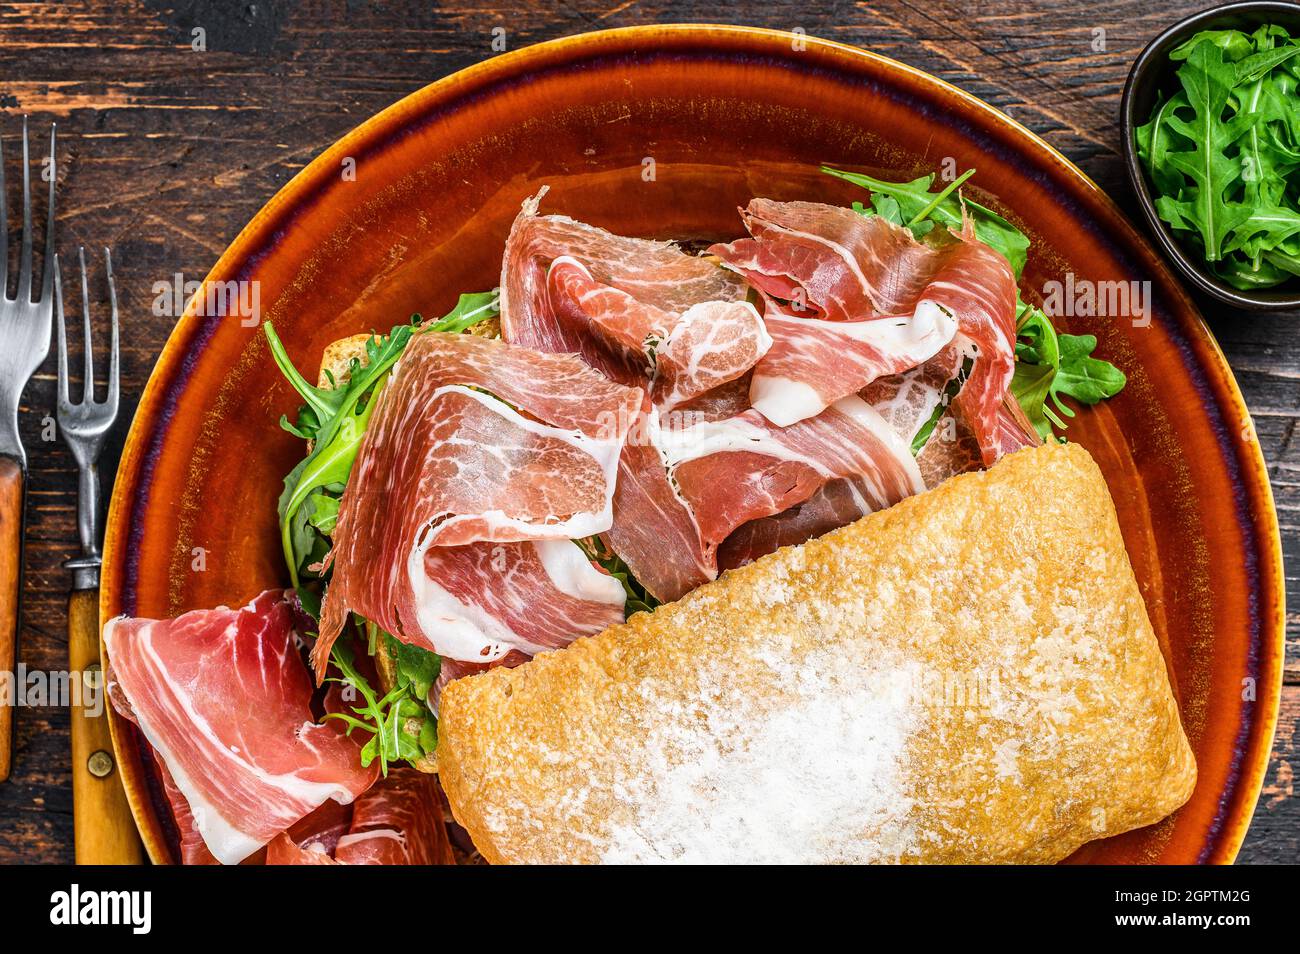 Spanish bocadillo de jamon, serrano ham sandwich on ciabatta bread with arugula. Dark wooden background. Top view Stock Photo